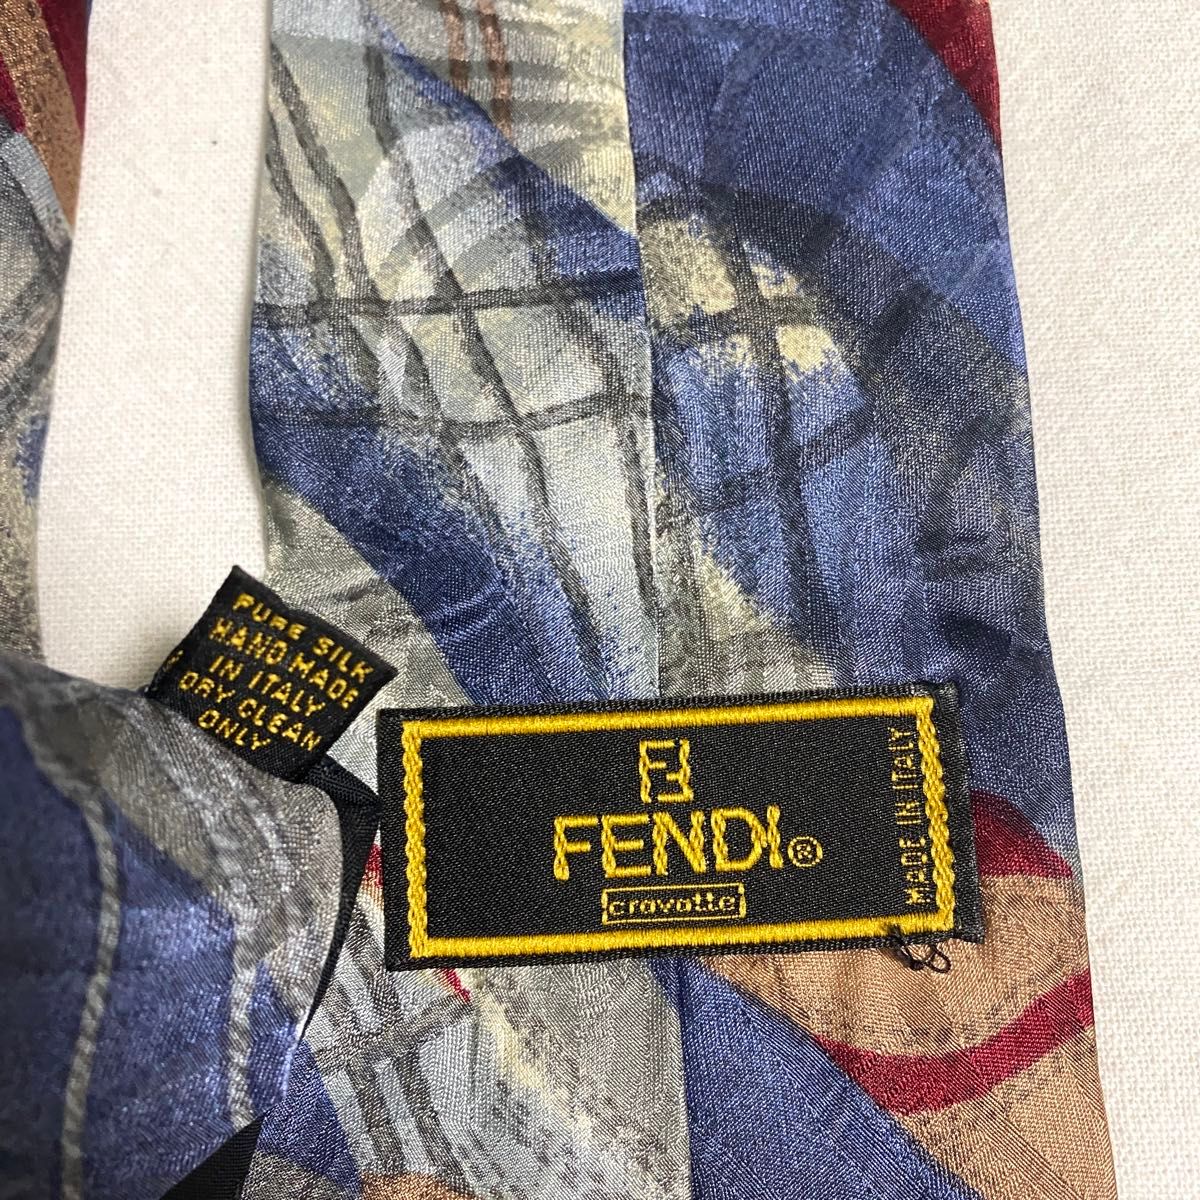 FENDI cravatte フェンディ ネクタイ シルク イタリア製 ブルー系